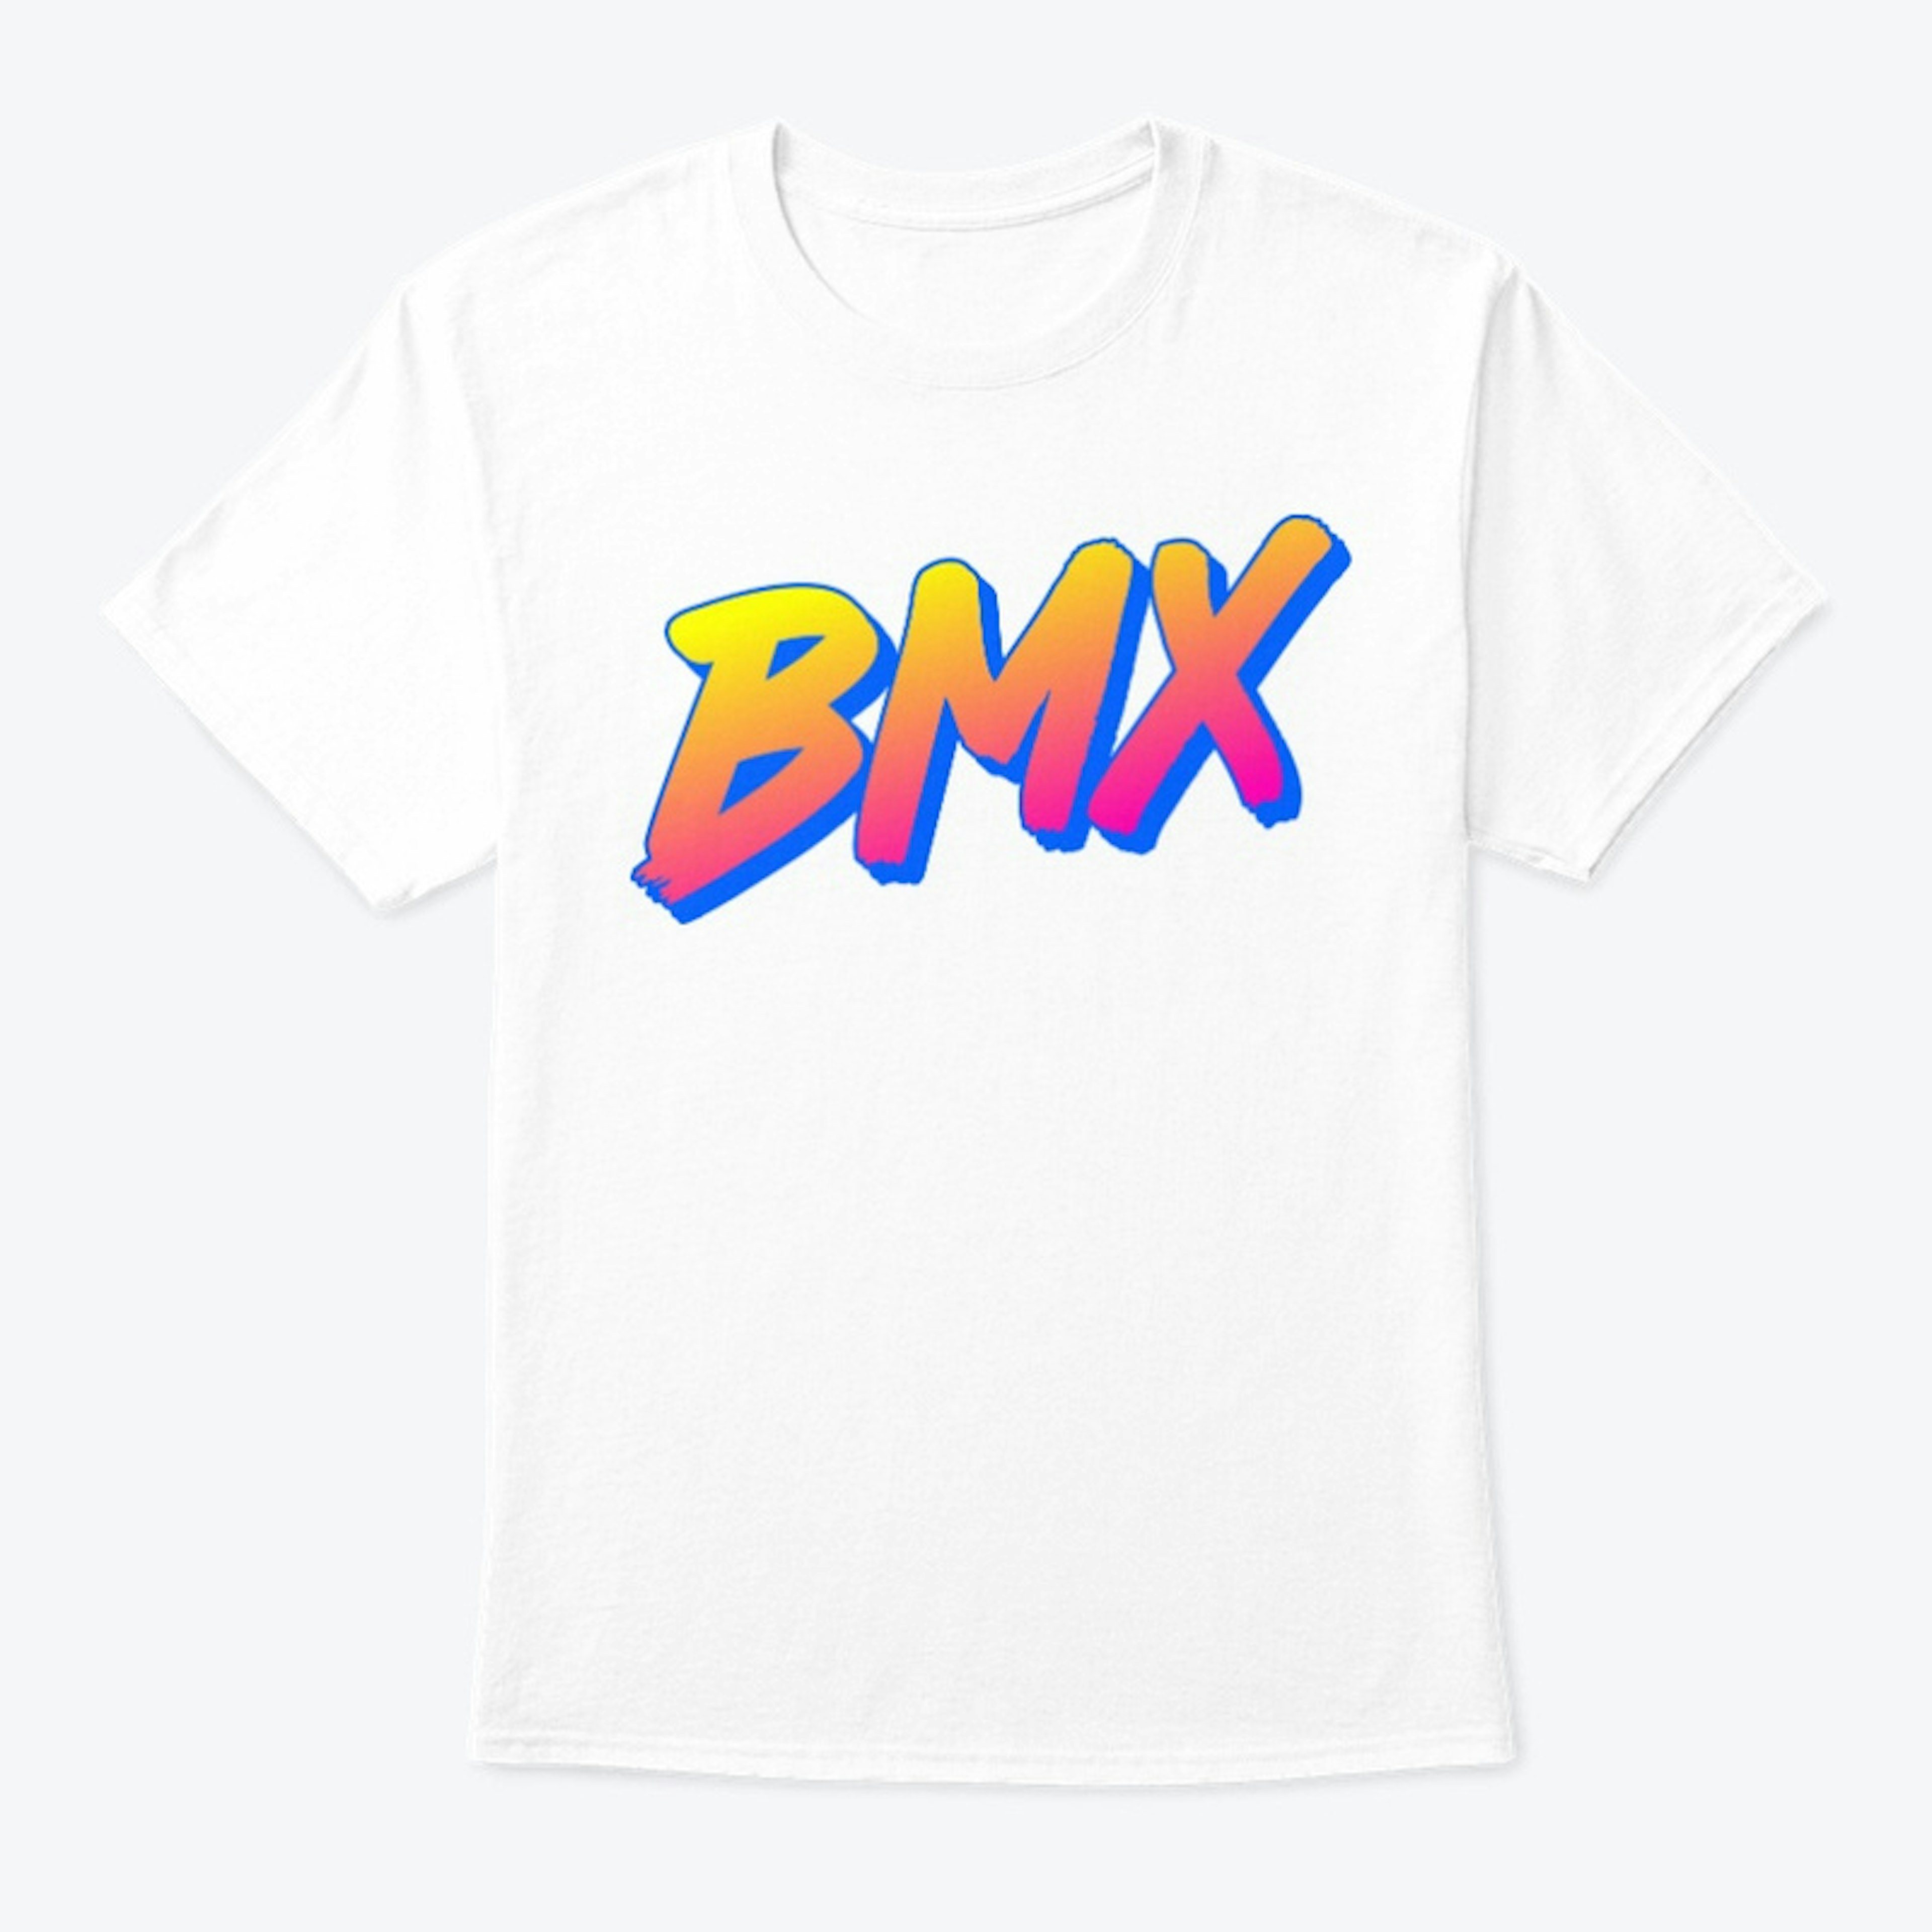 BMX retro logo